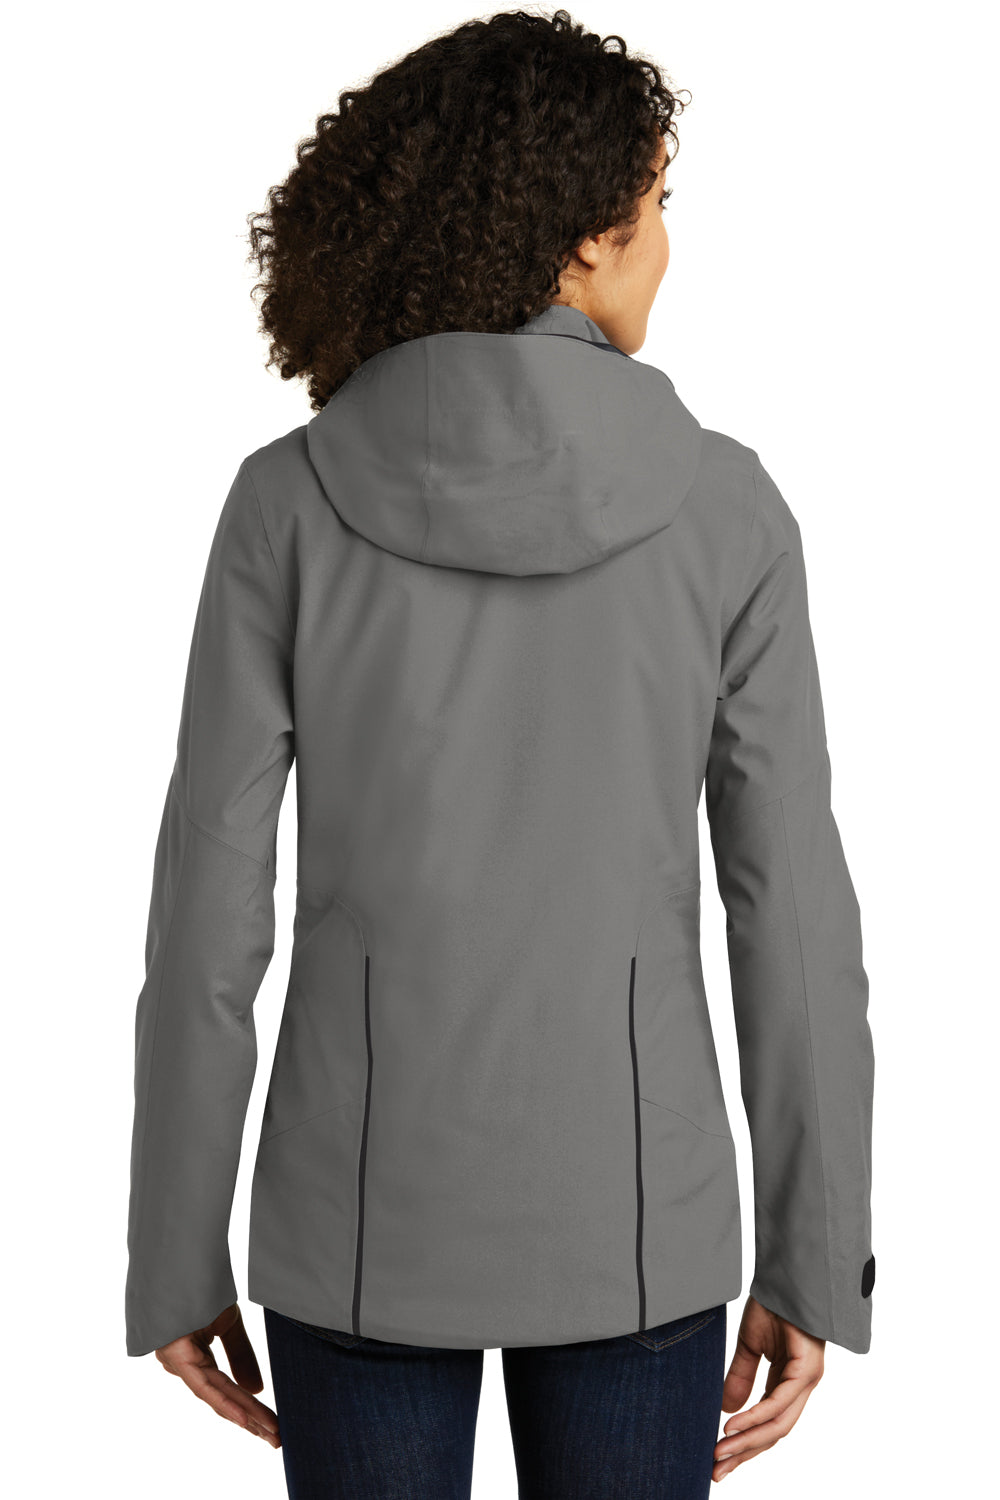 Eddie Bauer EB555 Womens WeatherEdge Plus Waterproof Full Zip Hooded Jacket Metal Grey Model Back